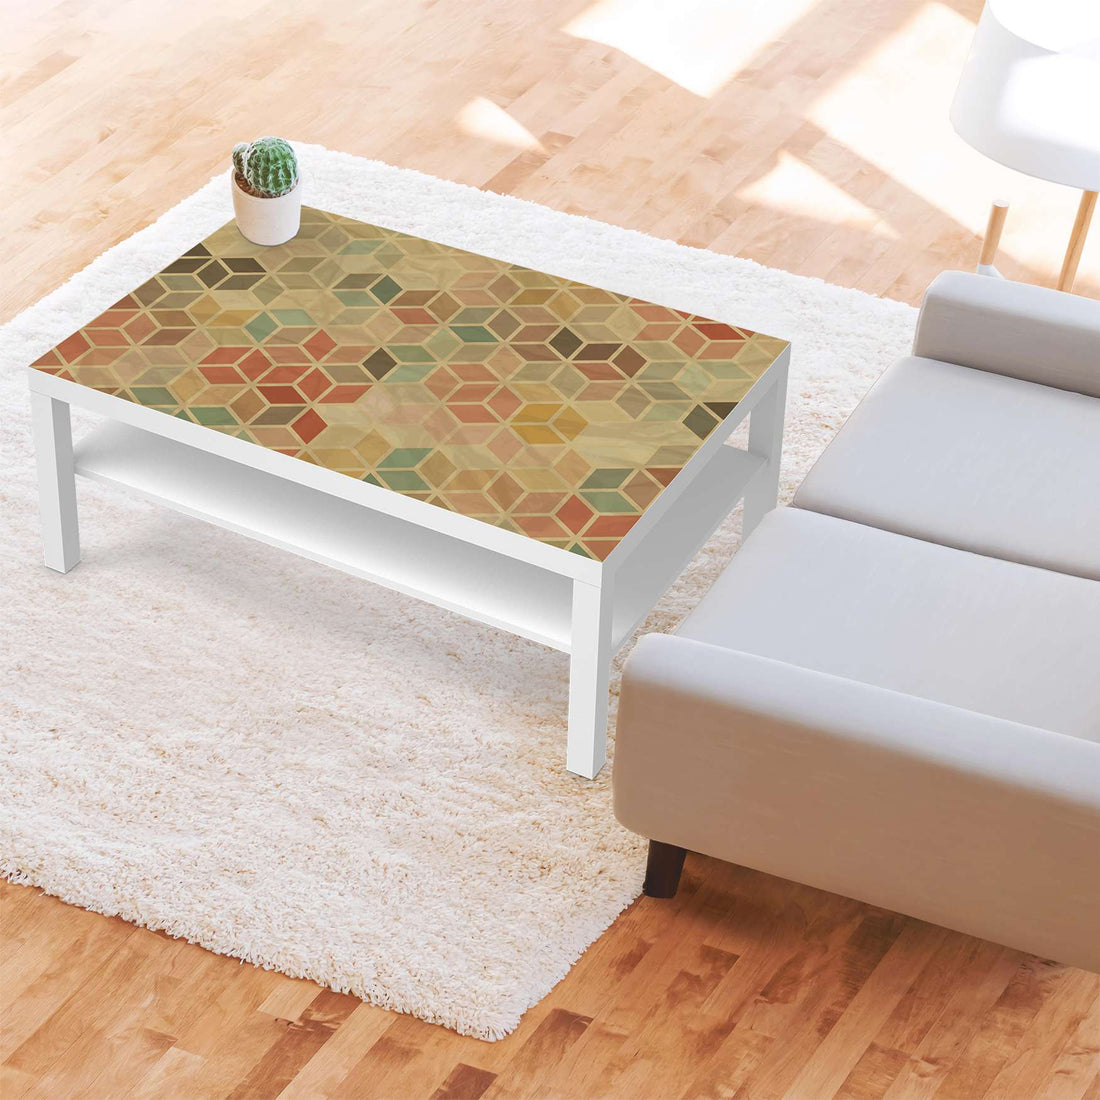 Klebefolie 3D Retro - IKEA Lack Tisch 118x78 cm - Wohnzimmer